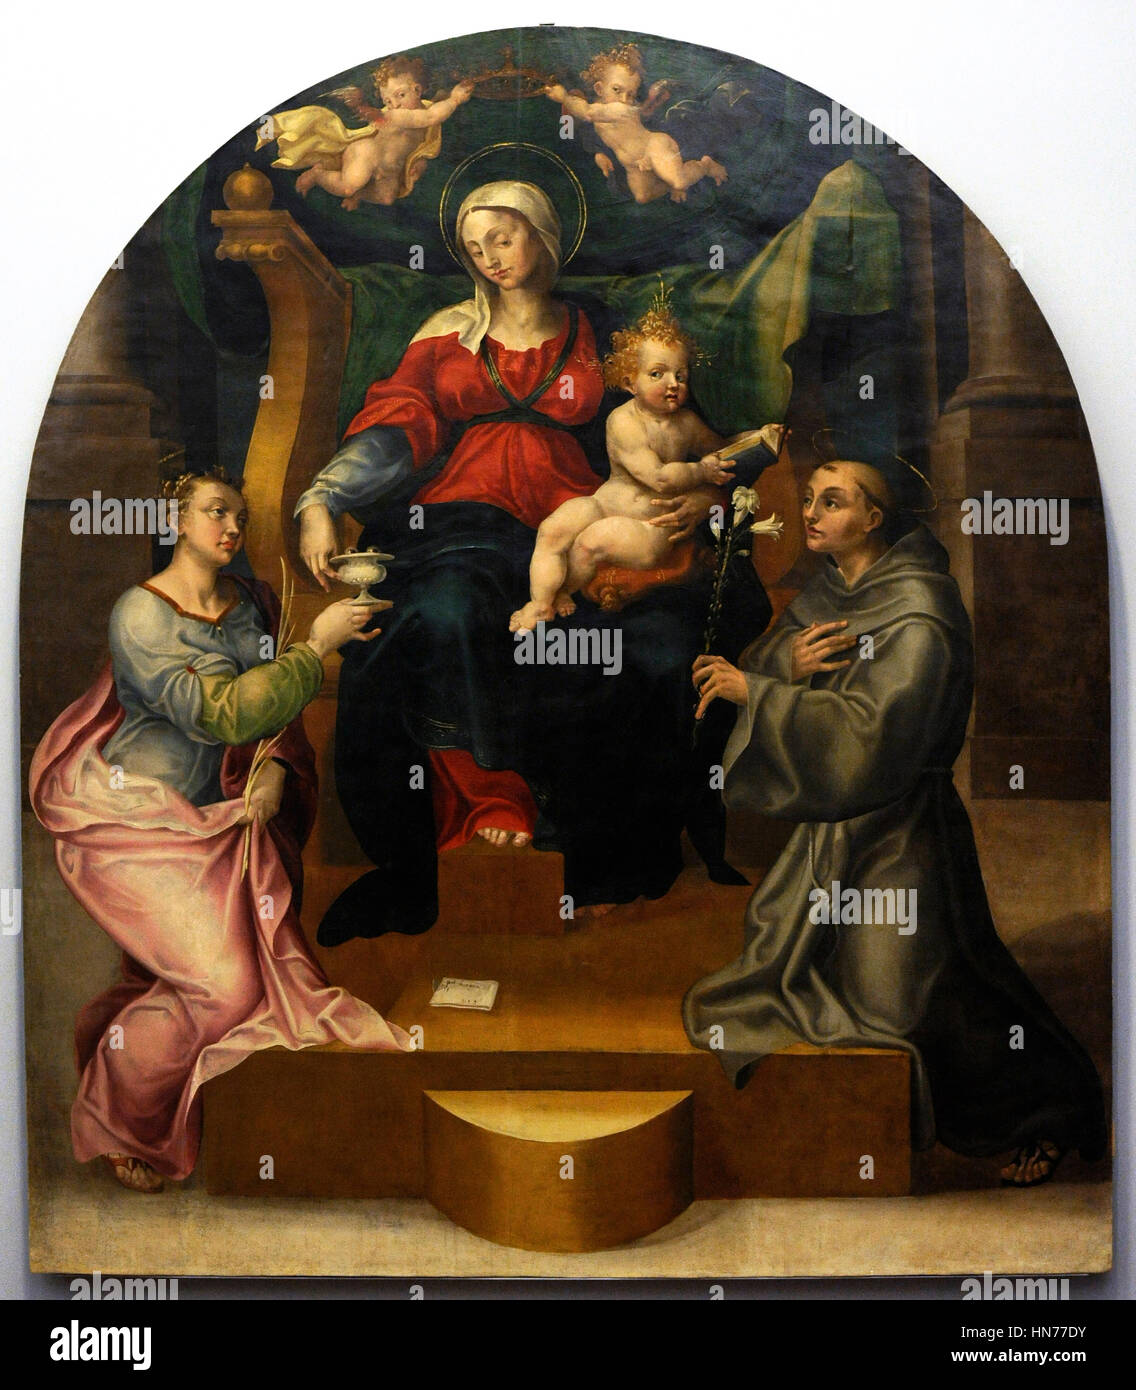 Pietro Negroni (1503-1565). Peintre italien. La Vierge et l'enfant avec Sainte Lucie et Antoine de Padoue, 1544 Renaissance. Musée de Capodimonte. Naples. L'Italie. Banque D'Images